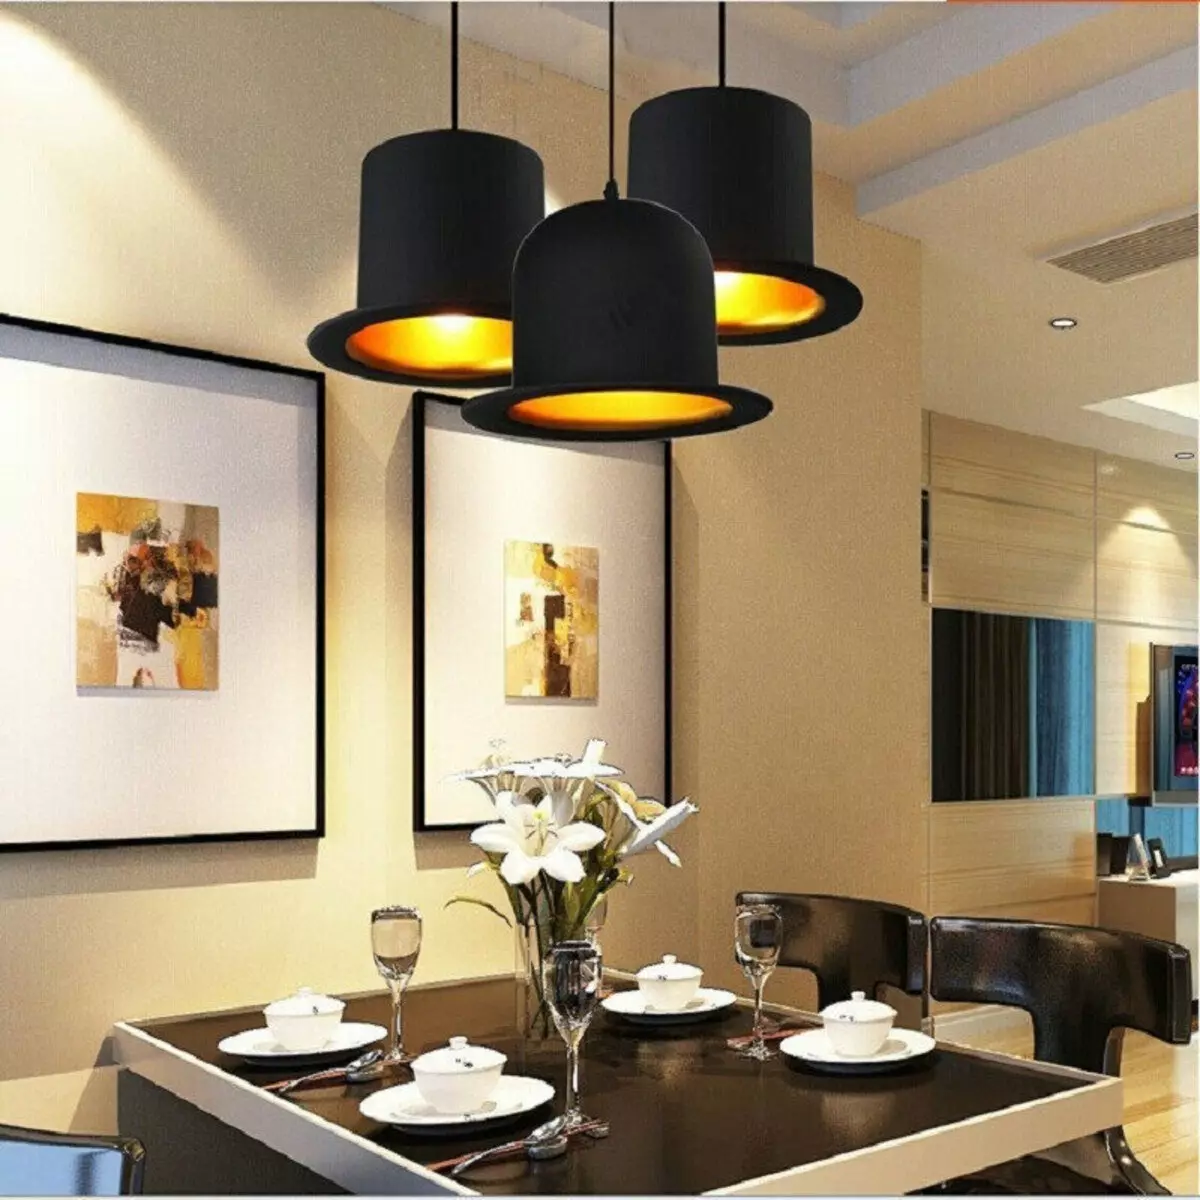 Խոհանոցային լամպեր (74 լուսանկար). Խոհանոցային Sconce եւ պատի վրա տեղադրված սենսորային լամպեր, գլխավերեւում եւ հետեւի լամպեր եւ առաստաղներ, այլ տարբերակներ 21003_62